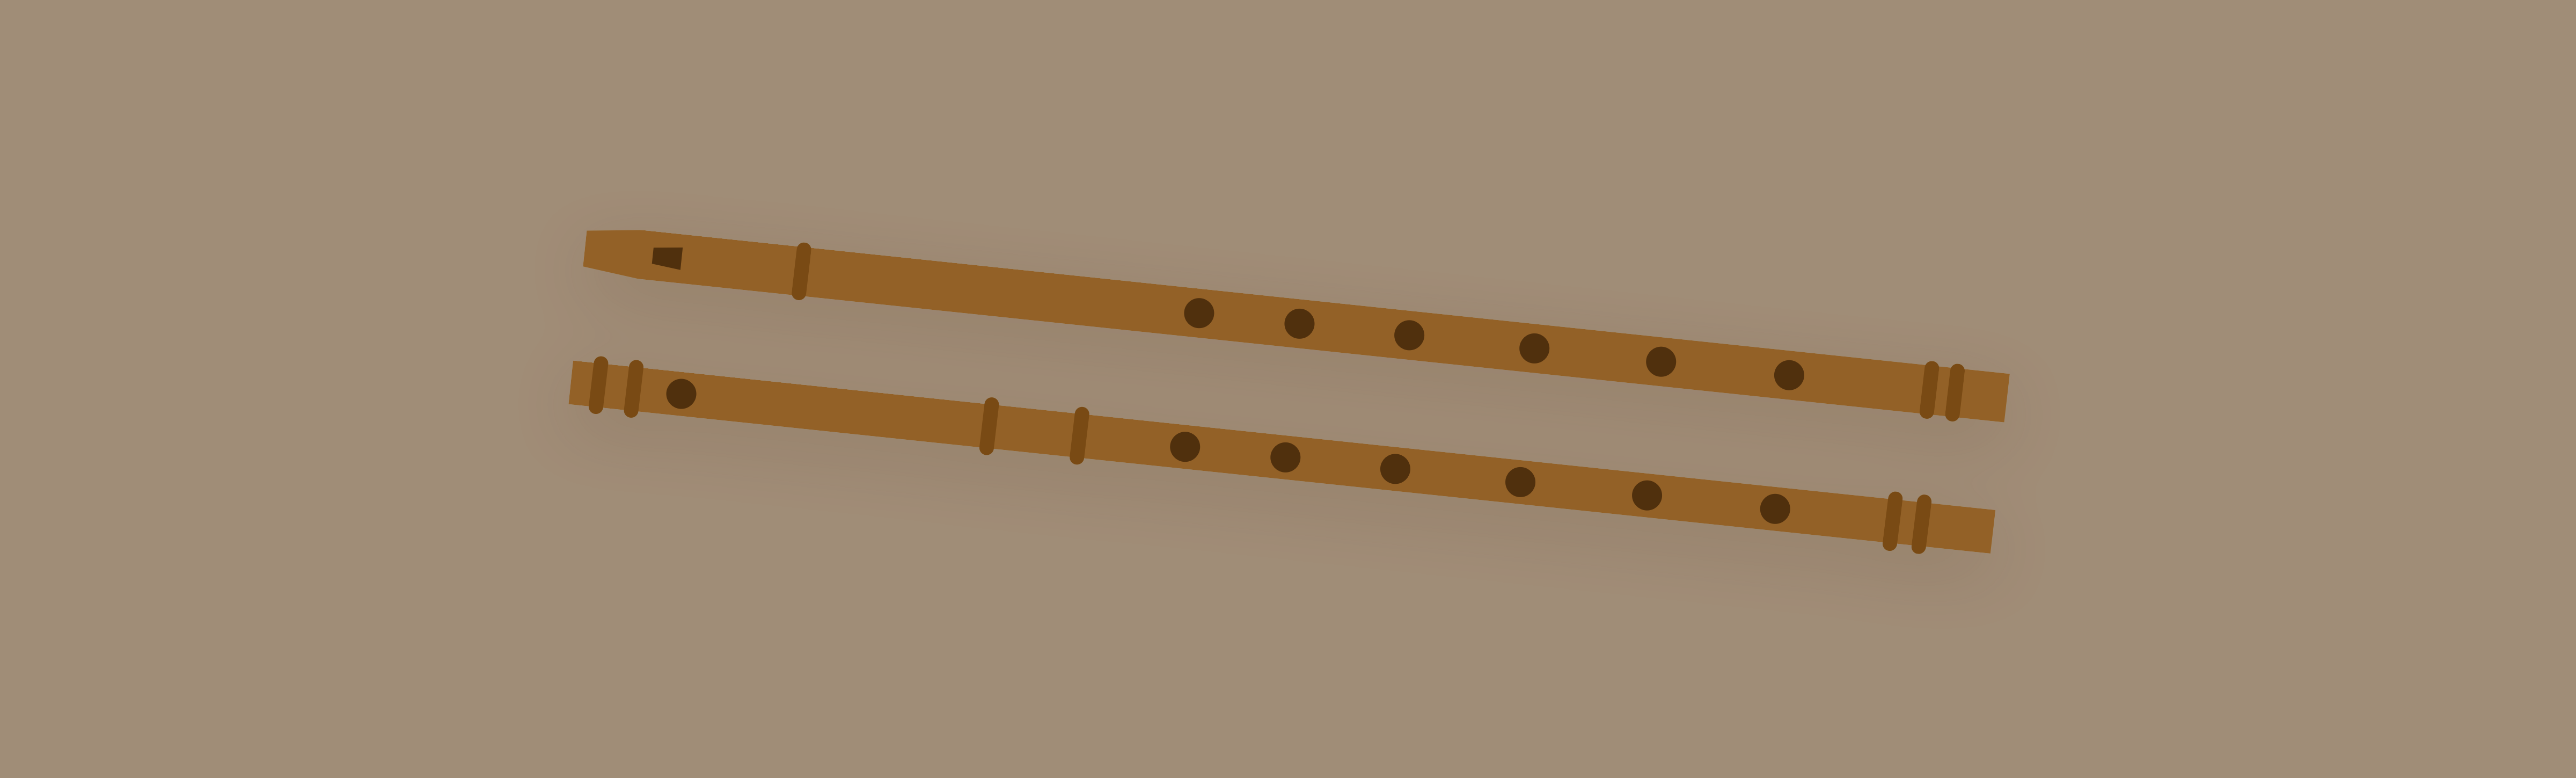 Bamboo Flute or Bansuri wiki